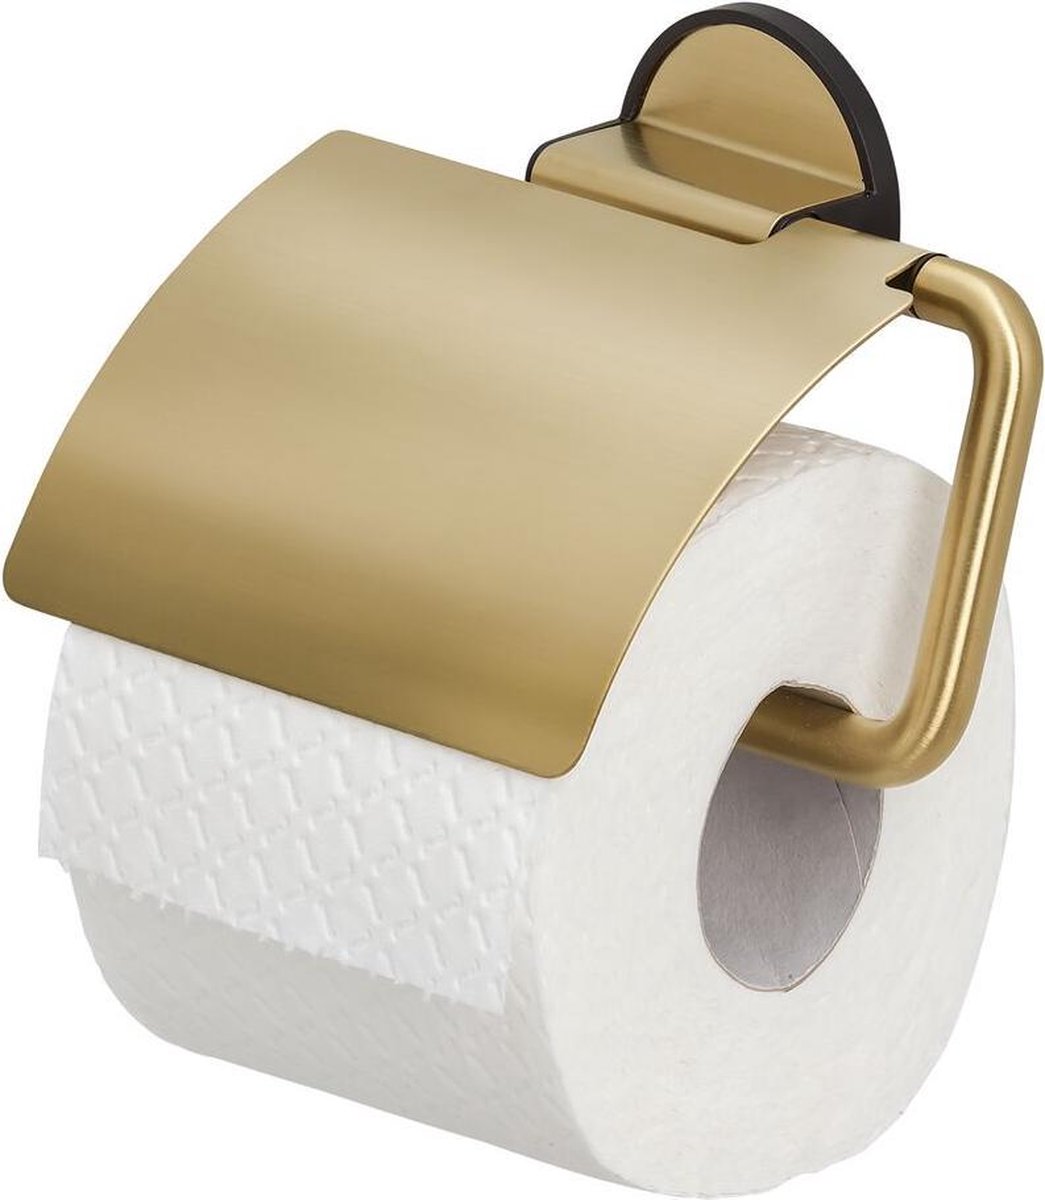 Tiger - Tiger Urban Ensemble d'accessoires de toilettes - Brosse WC avec  support - Porte-rouleau papier toilette sans rabat - Crochet  porte-serviette - Noir